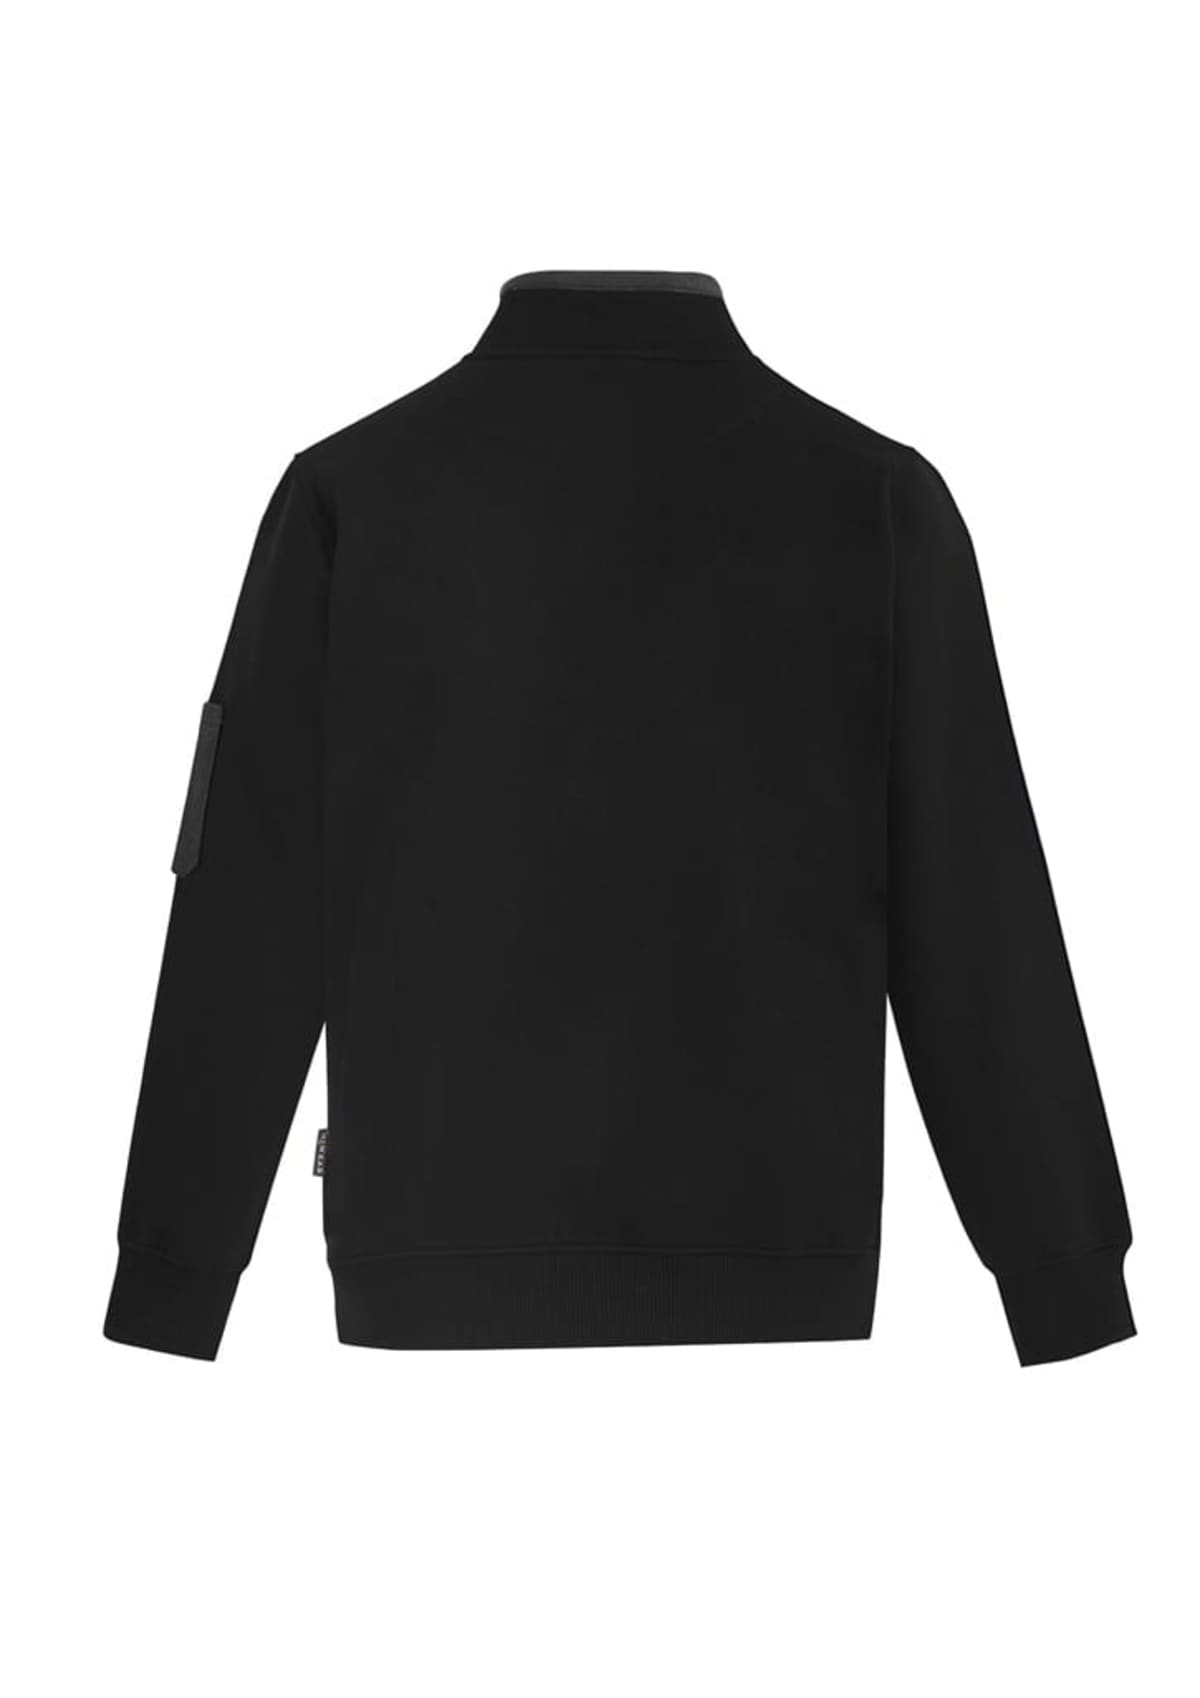 Unisex 1/4 Zip Brushed Fleece Pullover